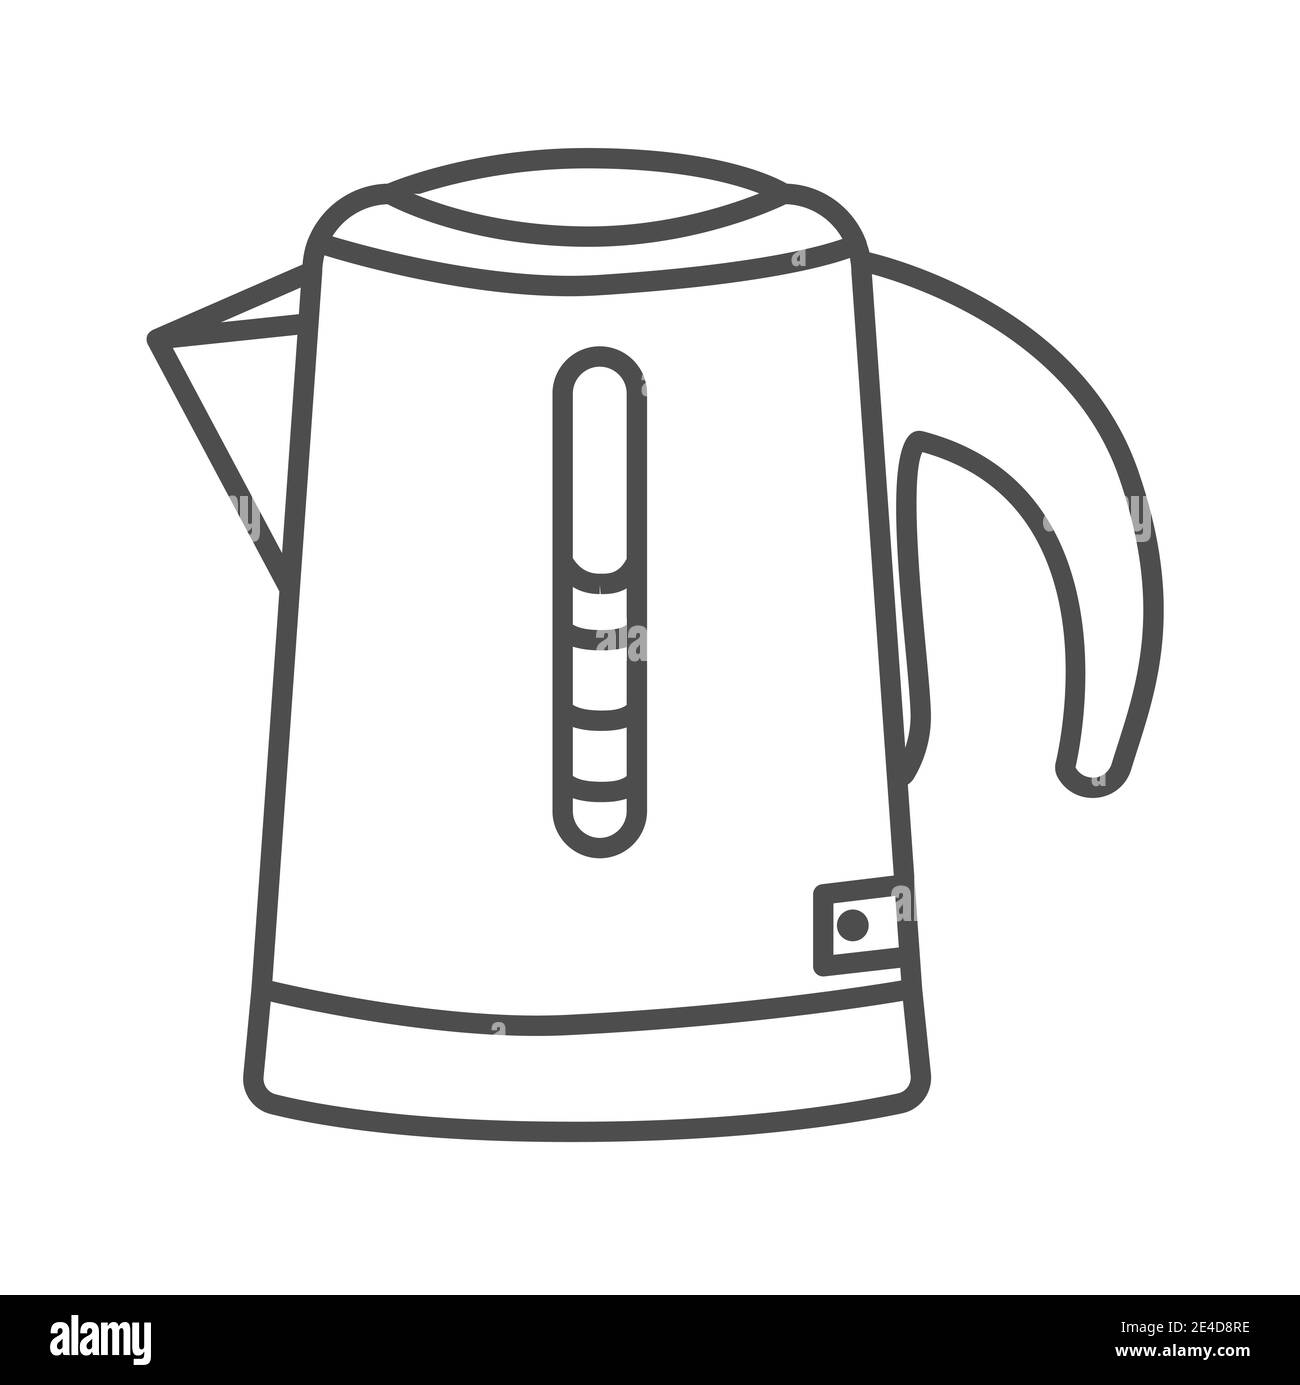 Boiling kettle, hot water kettle, kettle, tea kettle, teapot icon